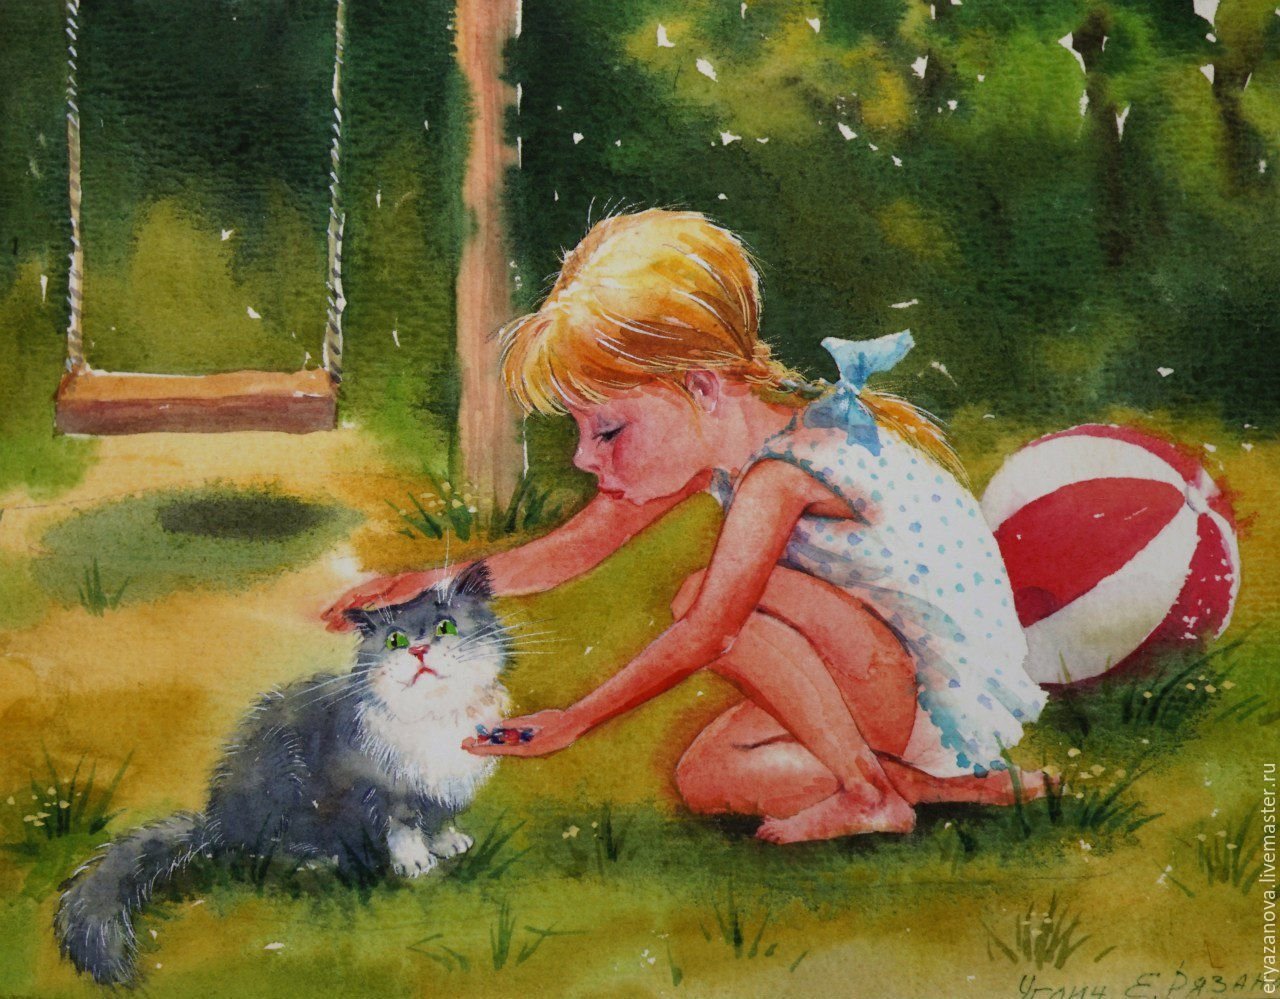 Сюжет на тему добра. Девочка с котятами. Дети с кошкой в живописи.